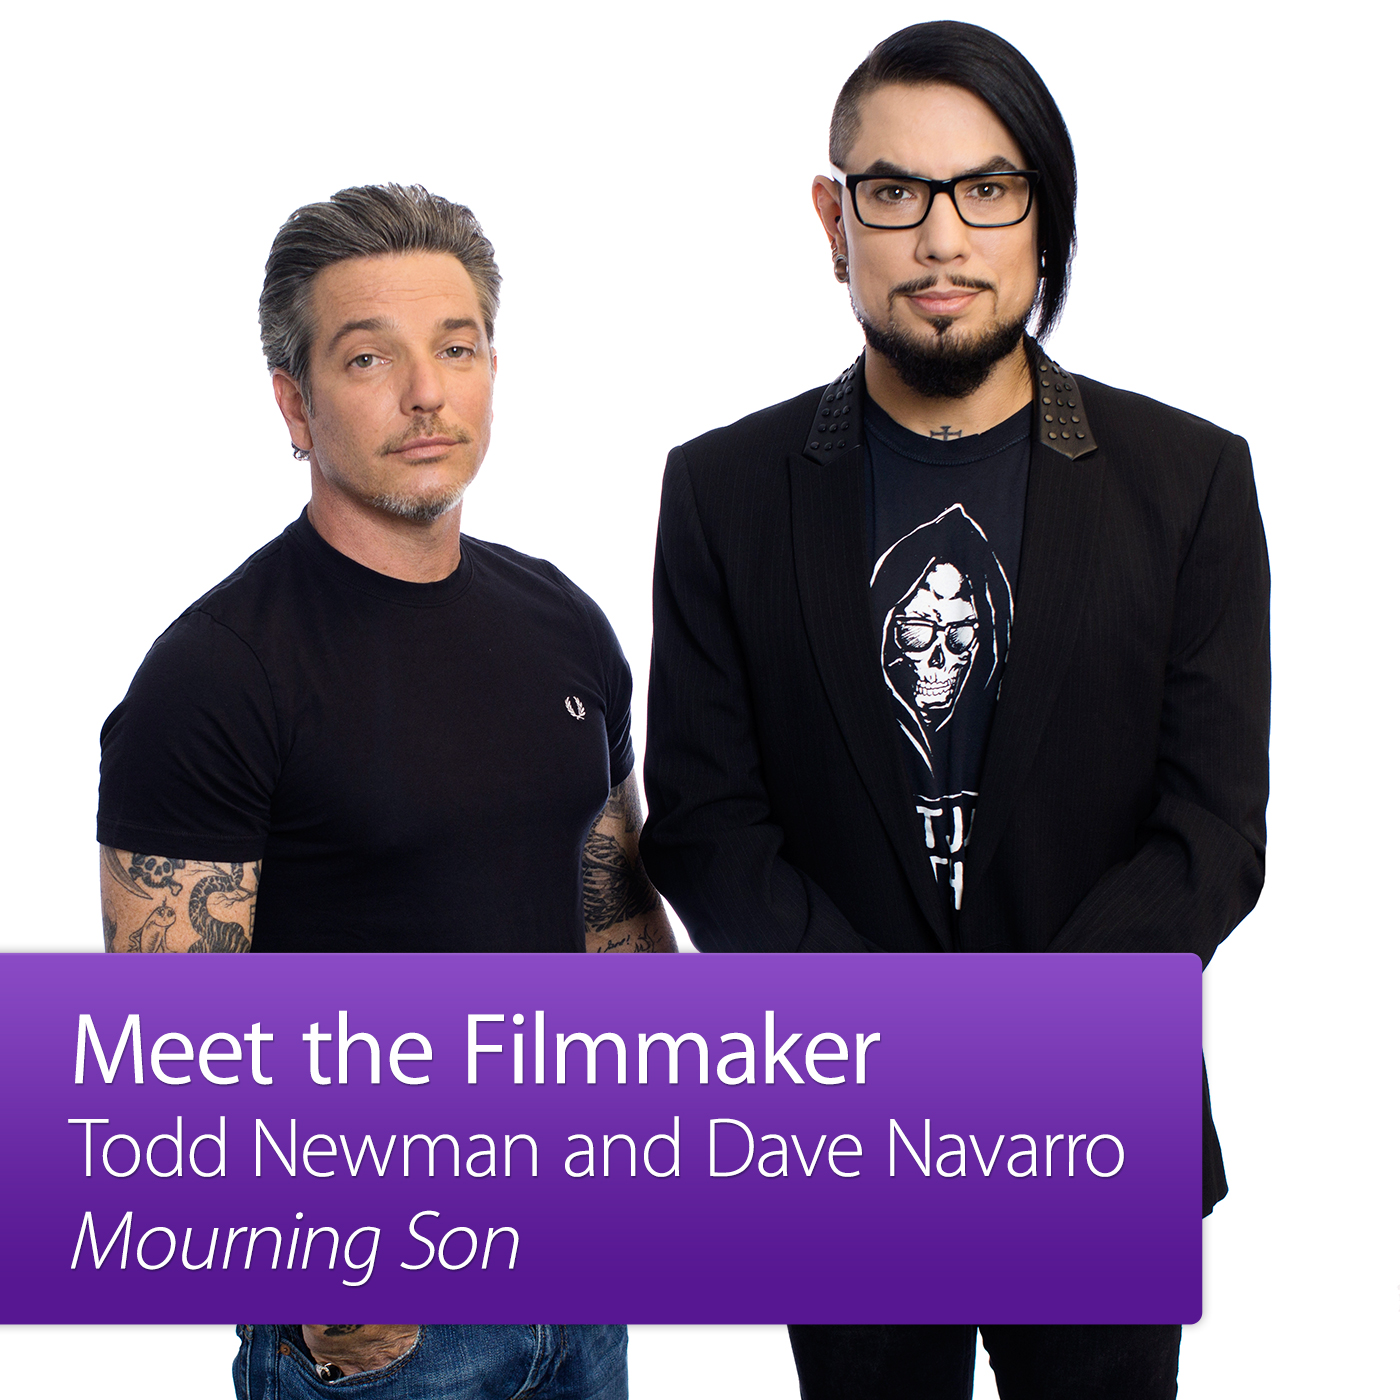 Mourning Son: Meet the Filmmaker